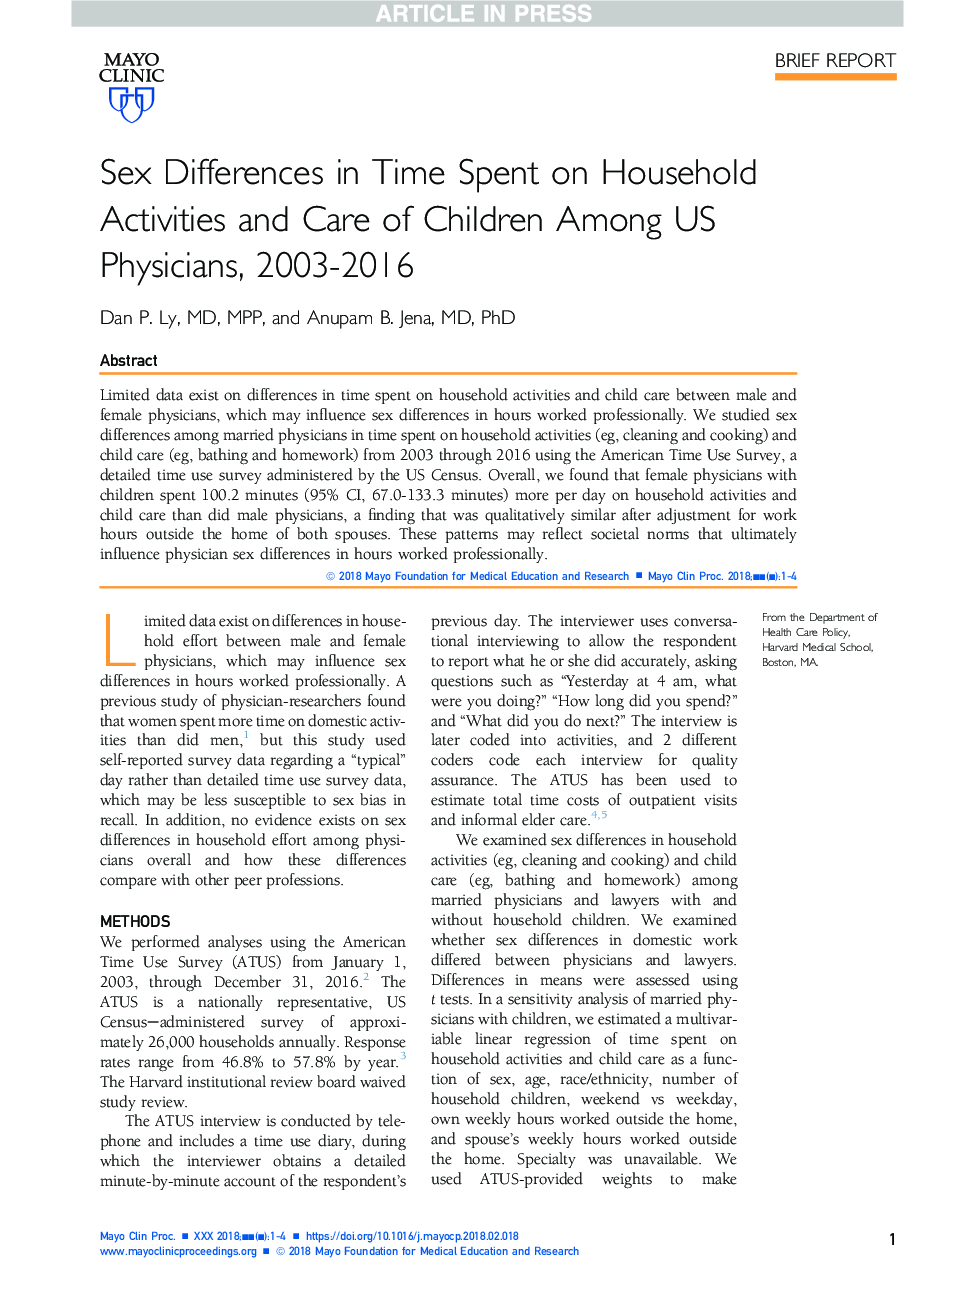 تفاوت های جنسی در زمان صرف فعالیت های خانگی و مراقبت از کودکان در میان پزشکان ایالات متحده، 2003-2016